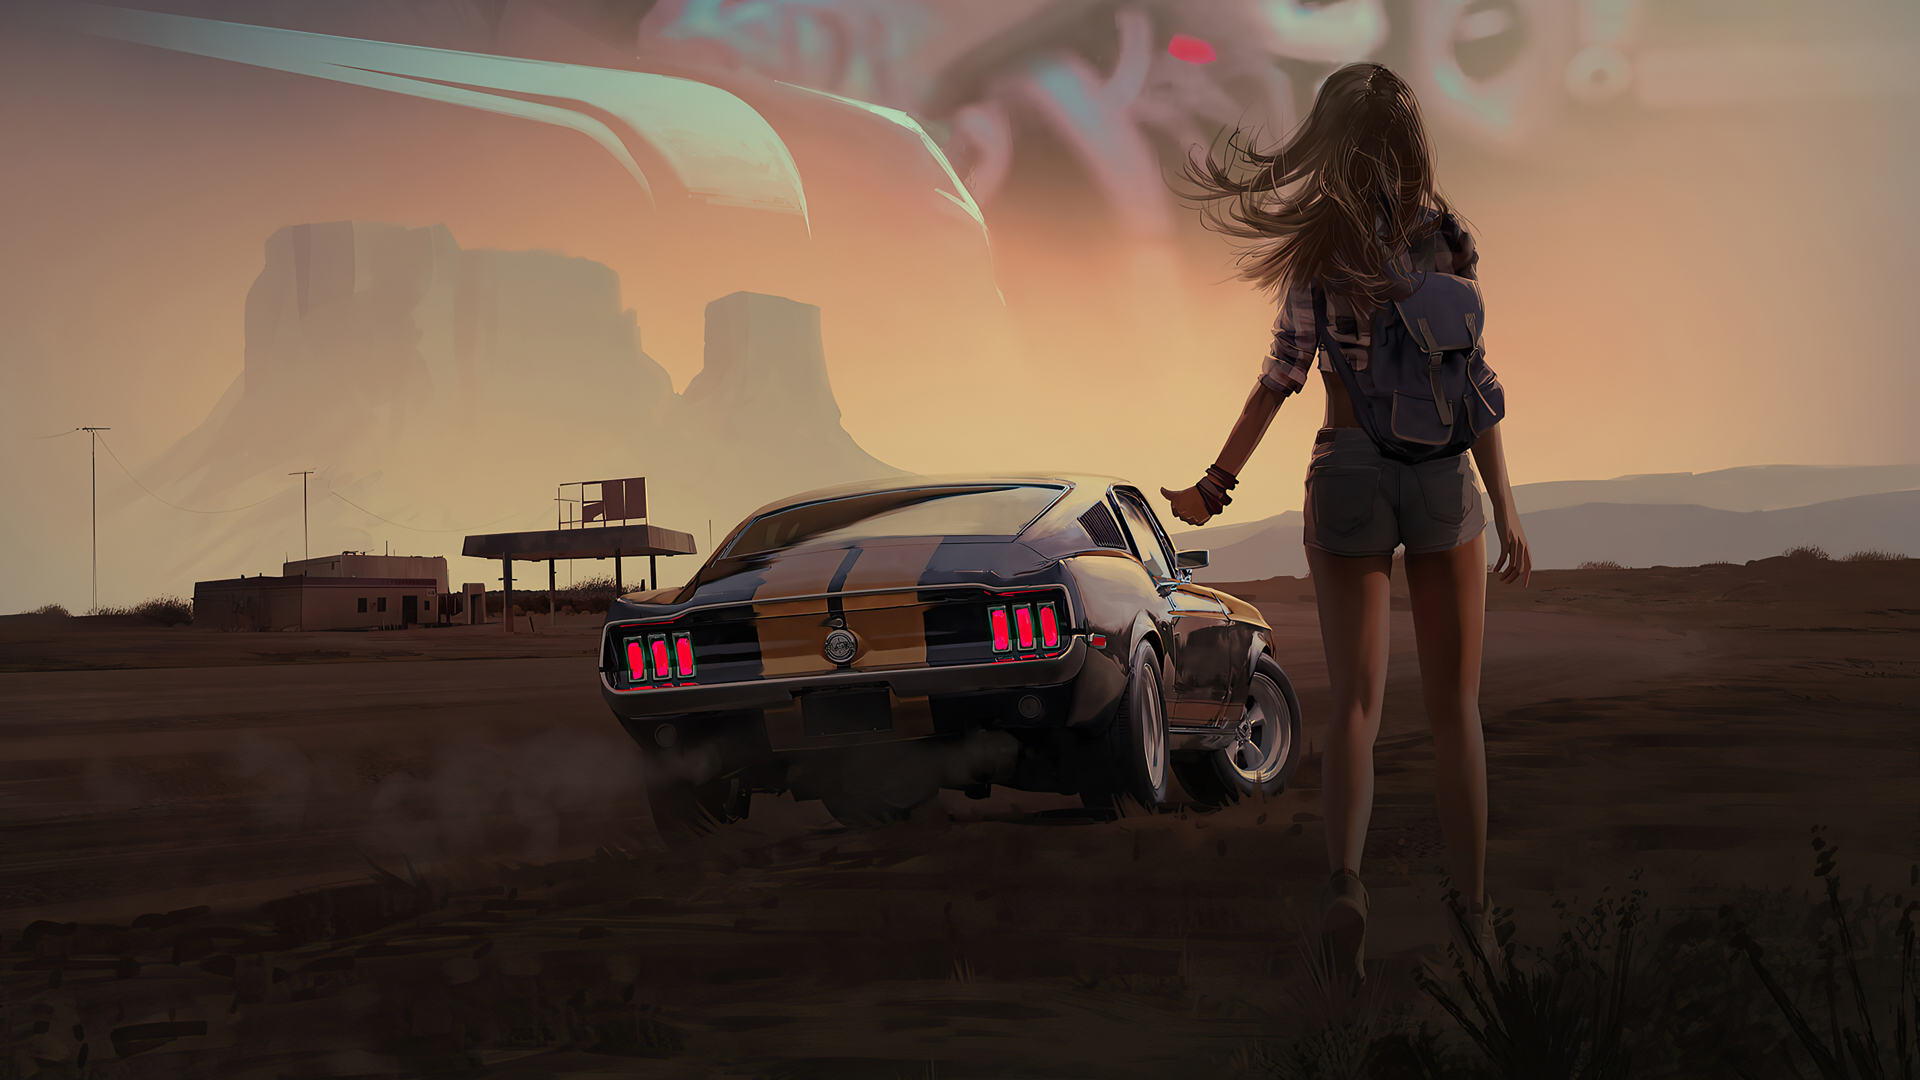 牛仔热裤动漫背包欧美少女背影 跑车 加油站 荒野 高清壁纸图片 少女背影